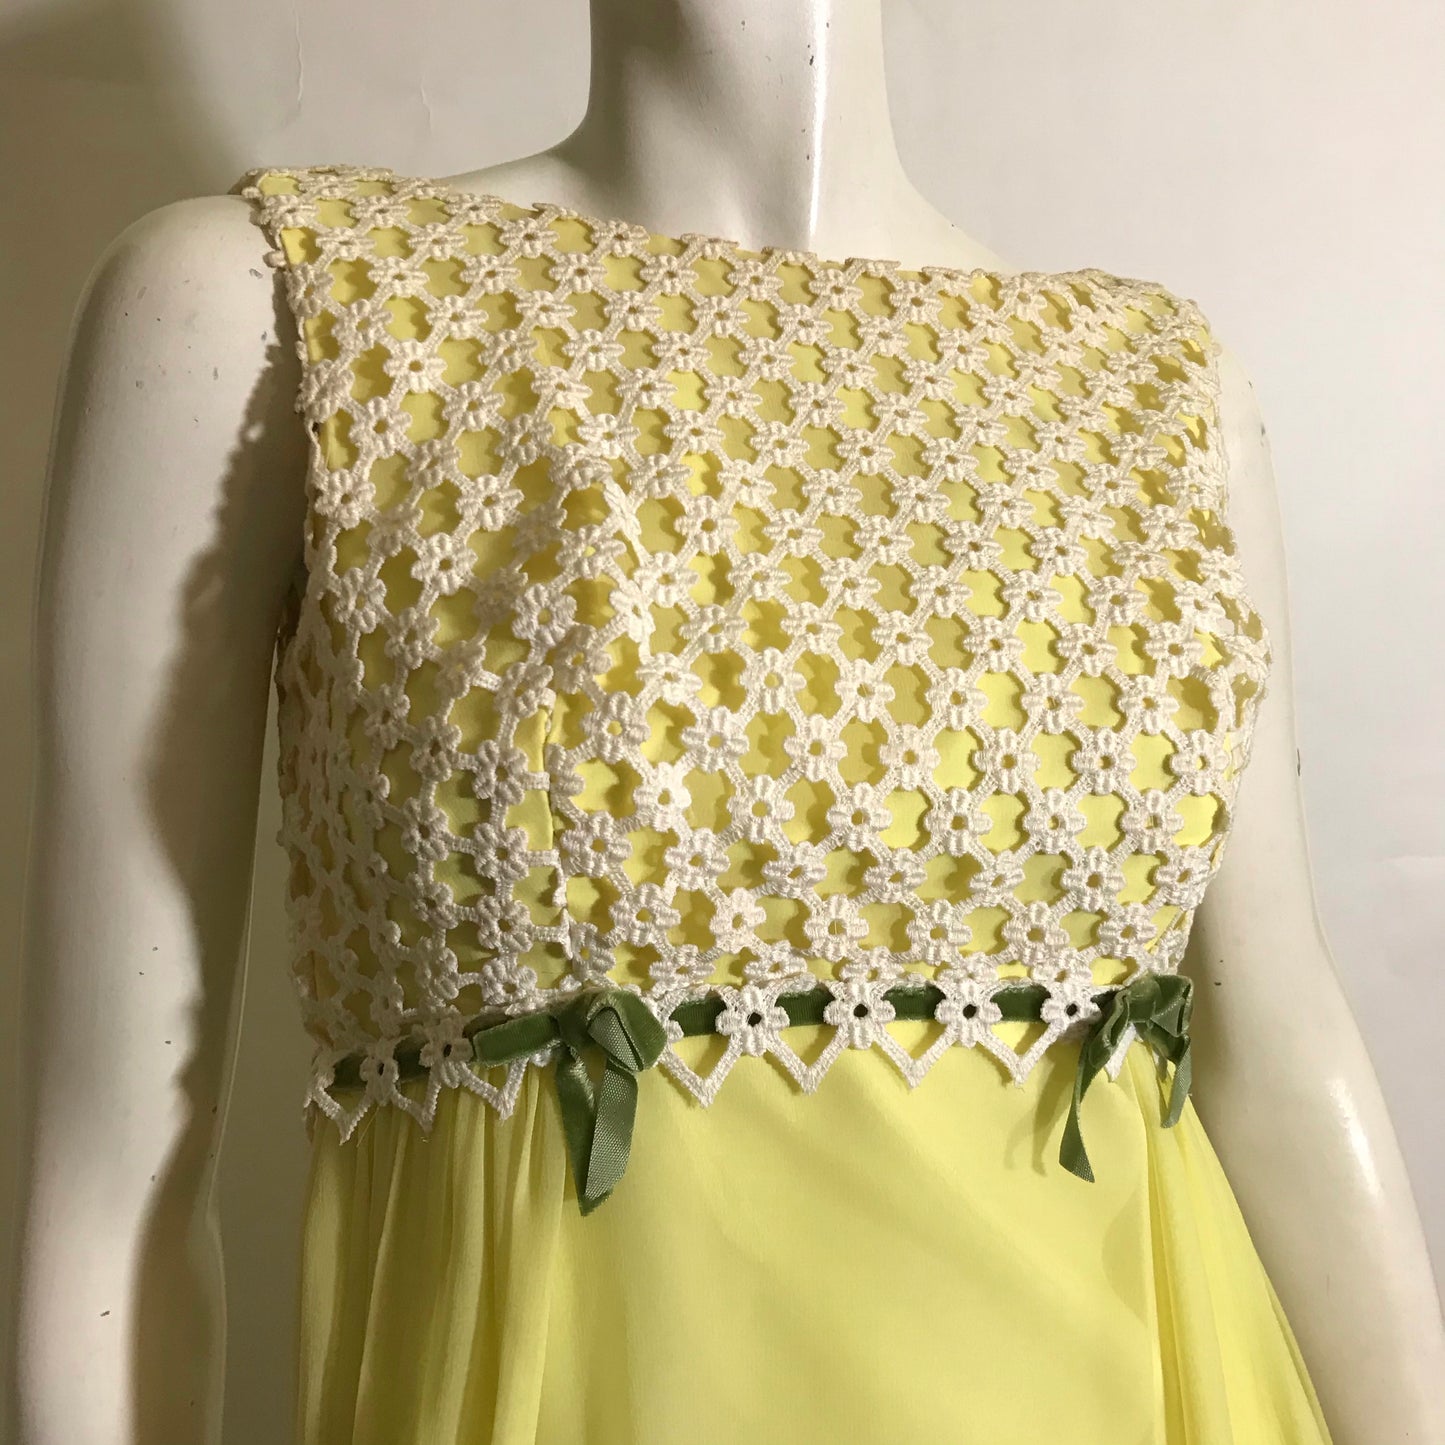 Regencycore Sunny Yellow and Moss Green Chiffon and Lace Maxi Dress circa 1960s